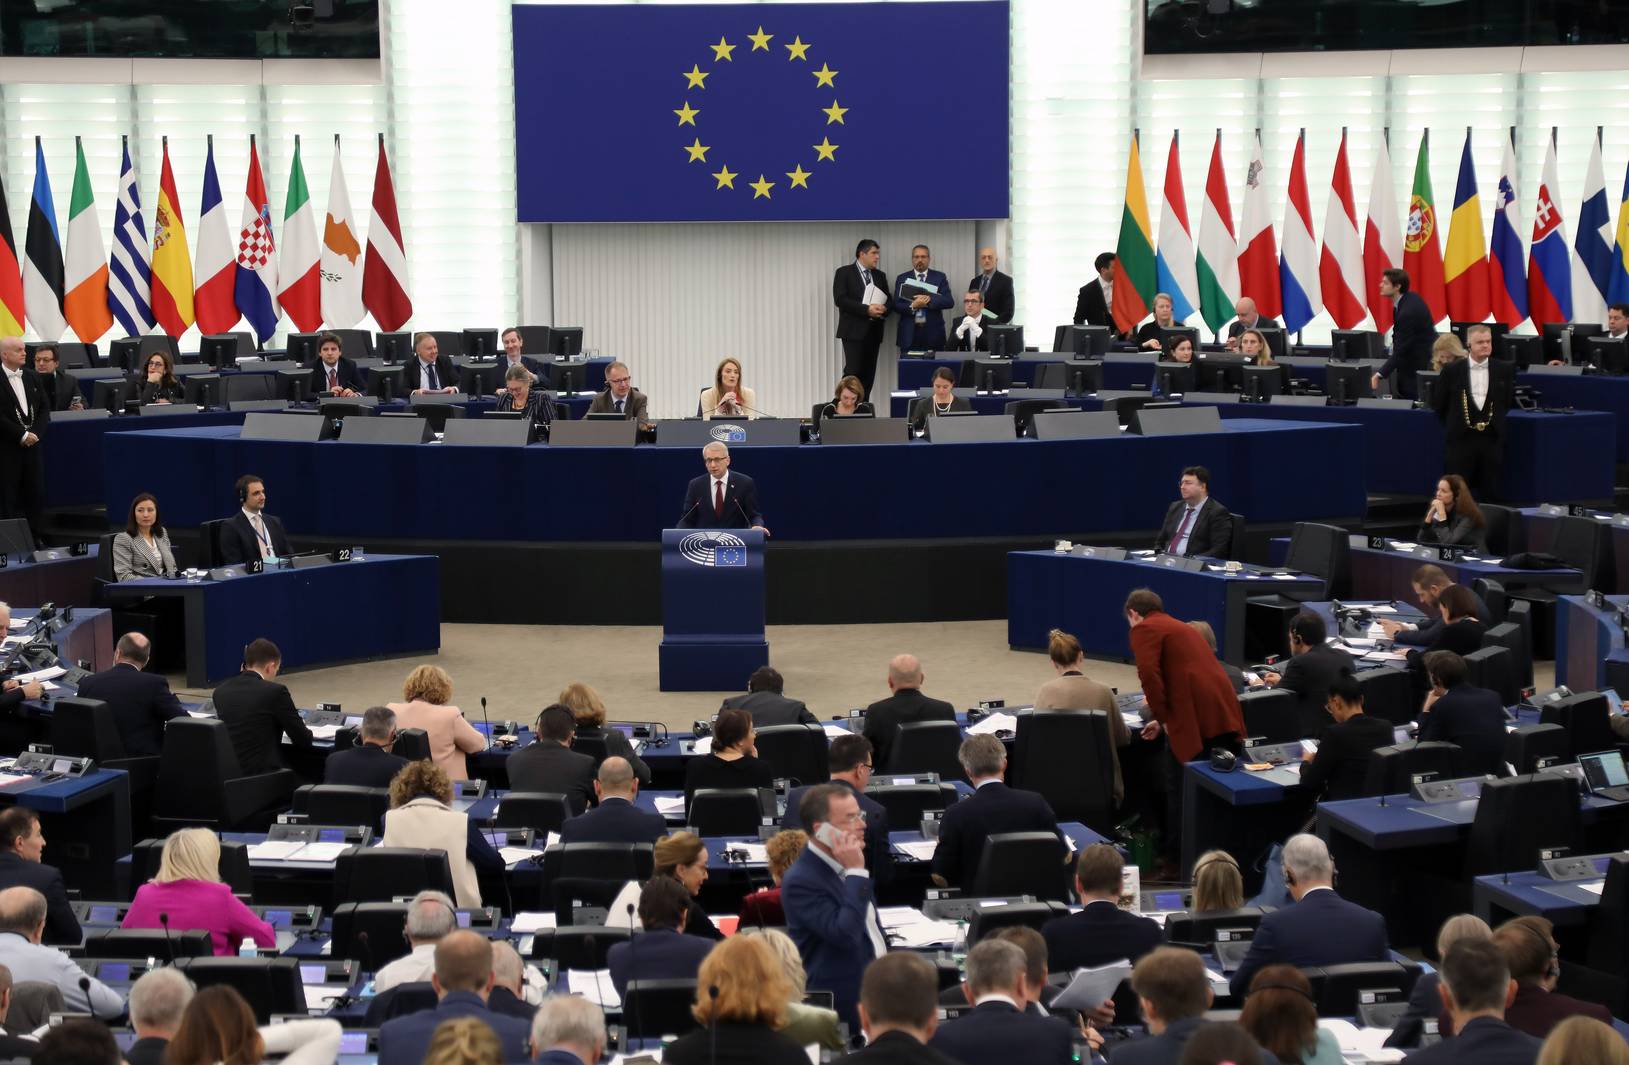 Премиерът Денков по време на дебатите с евродепутатите в Европейския парламент 